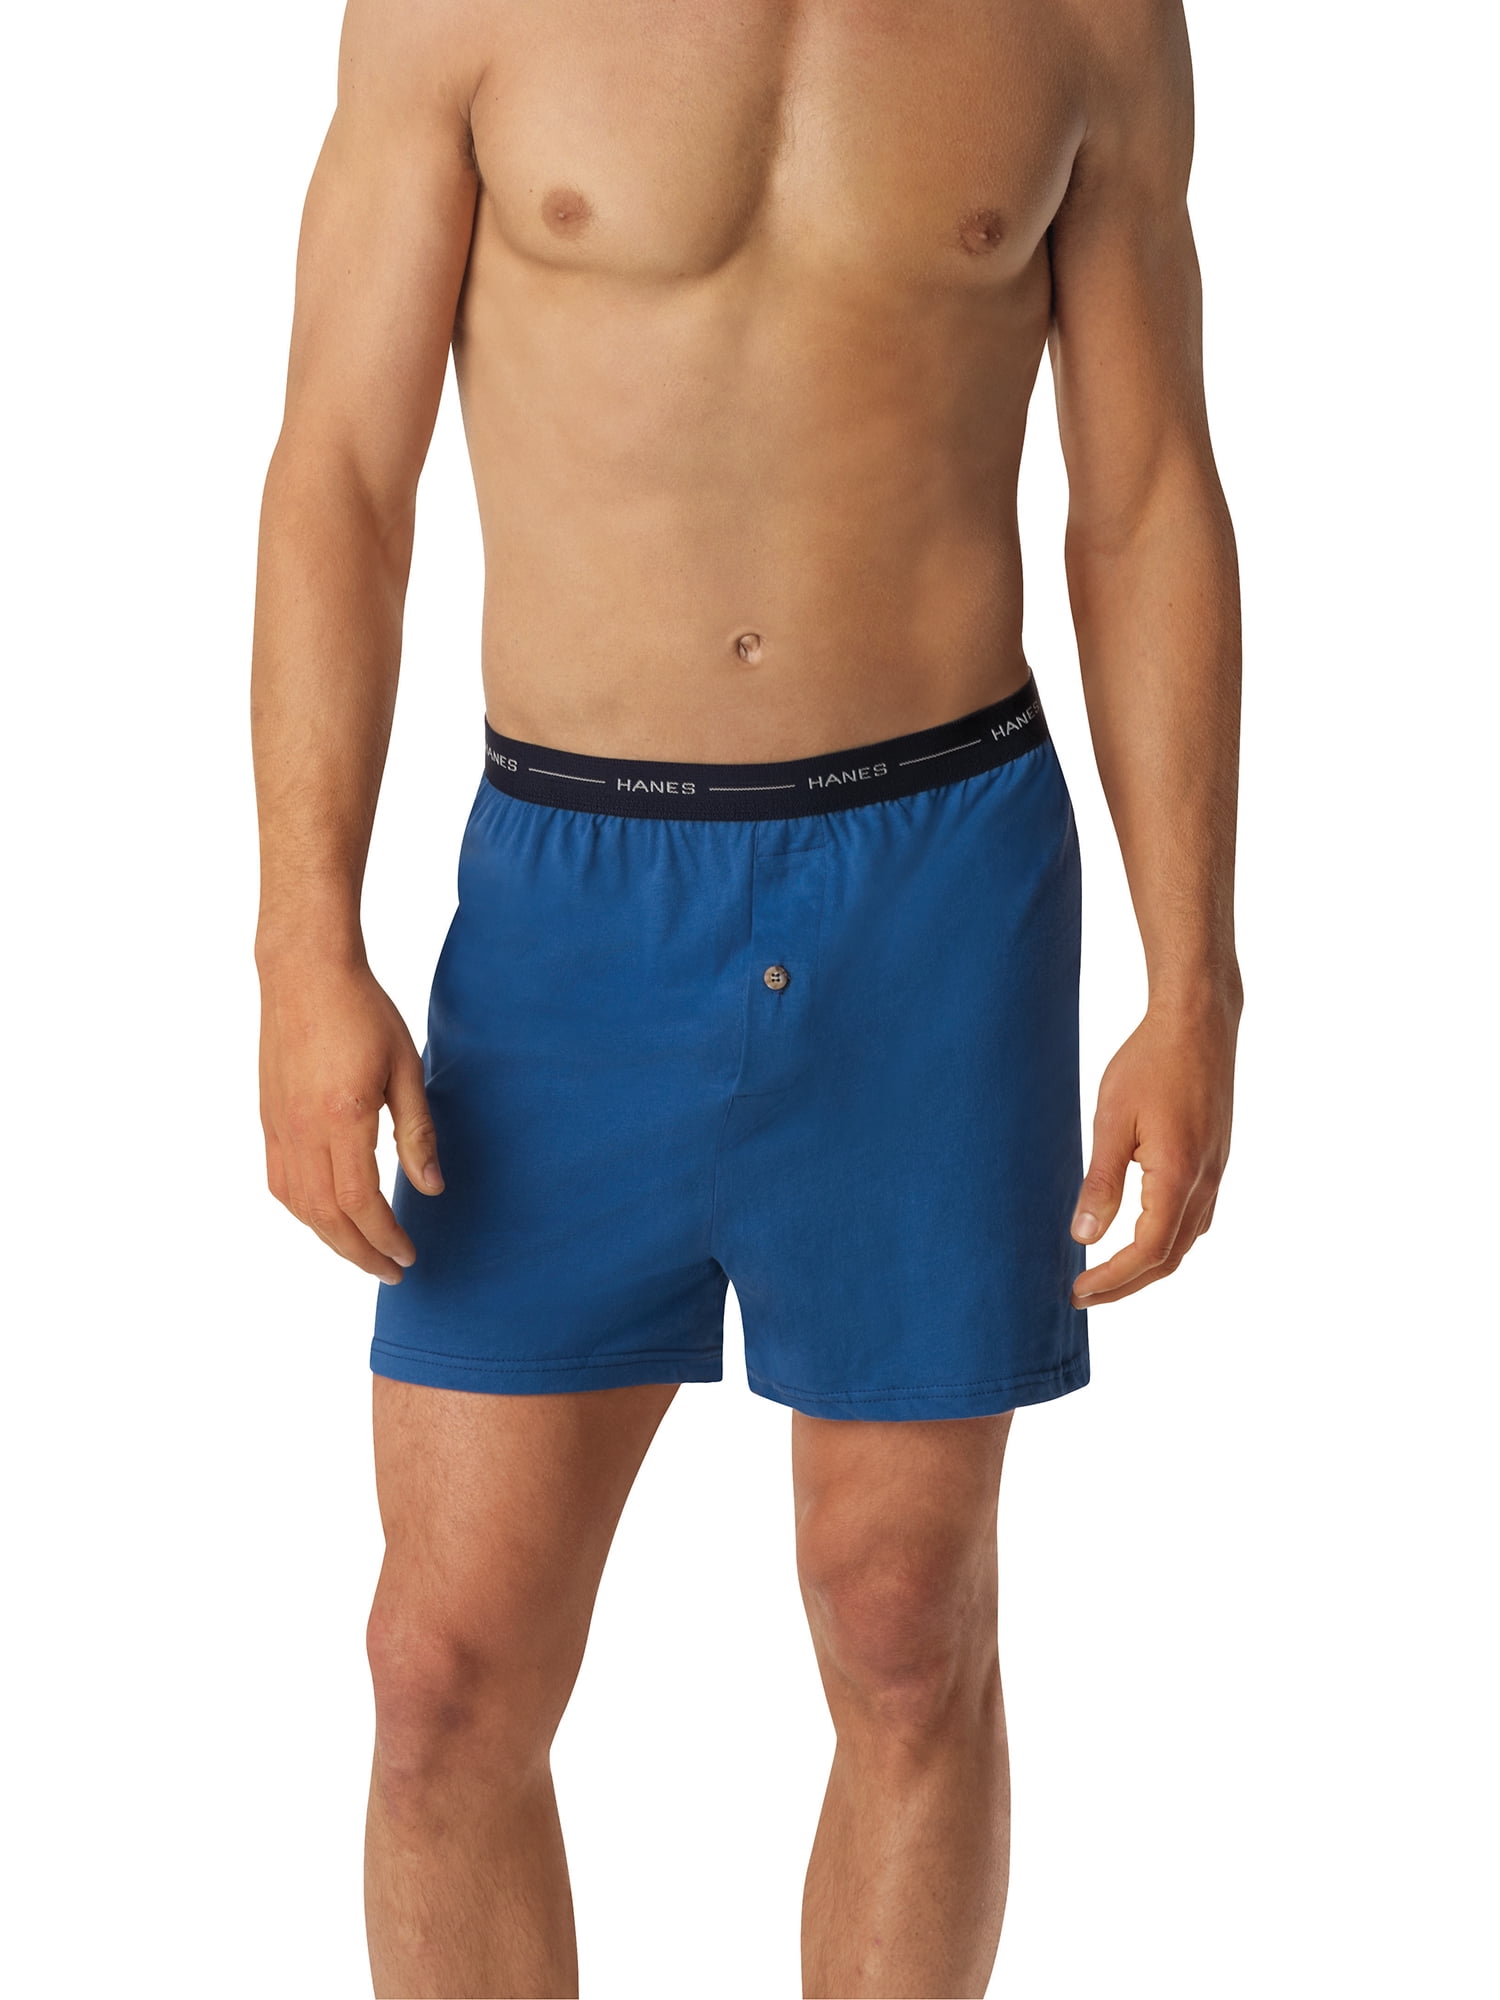 Hanes Boys 5 Pack Comfort Flex Knit Boxer